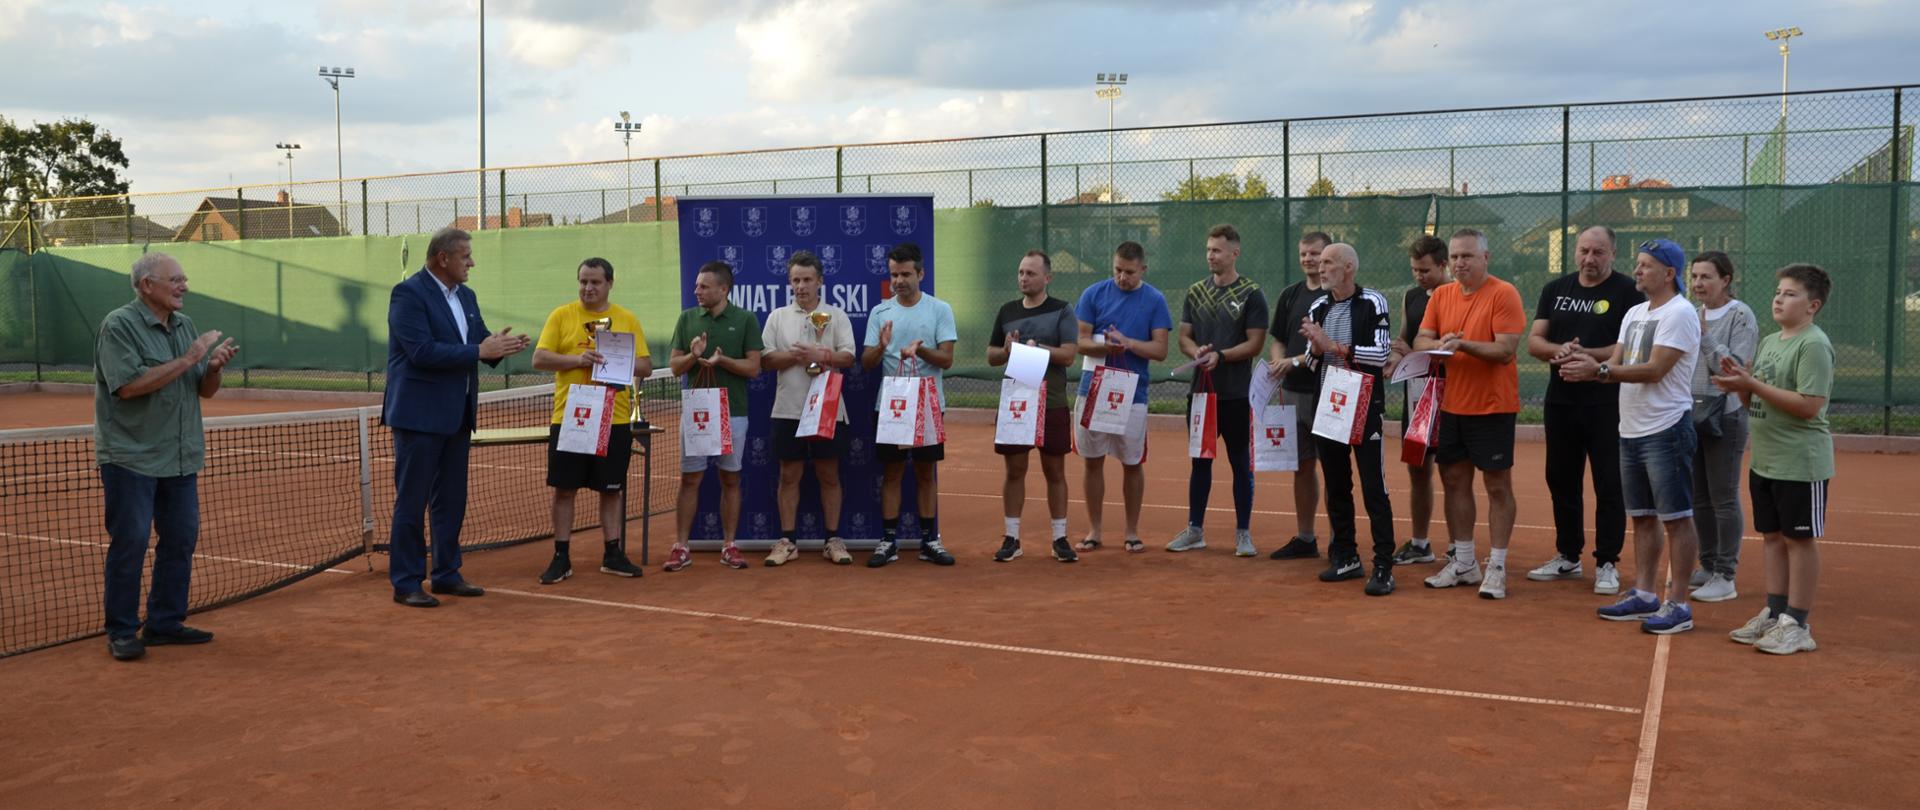 Starosta bielski Sławomir Jerzy Snarski podczas ceremonii wręczania pucharów w turnieju tenisa ziemnego